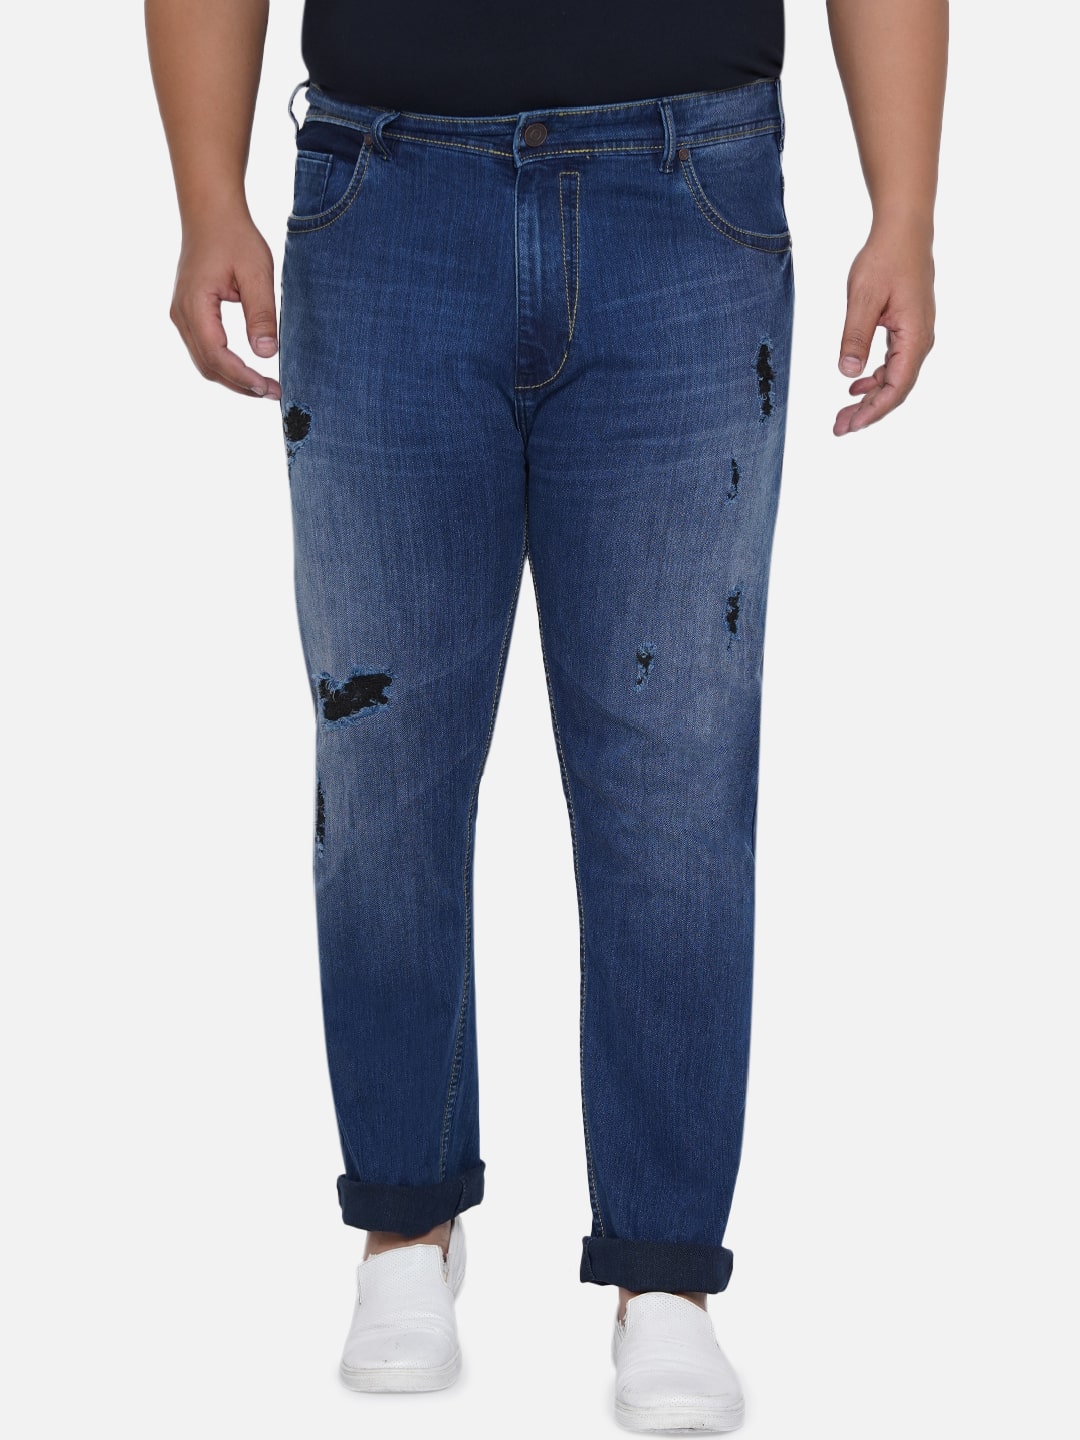 affordables/jeans/EJPJ2050/ejpj2050-2.jpg